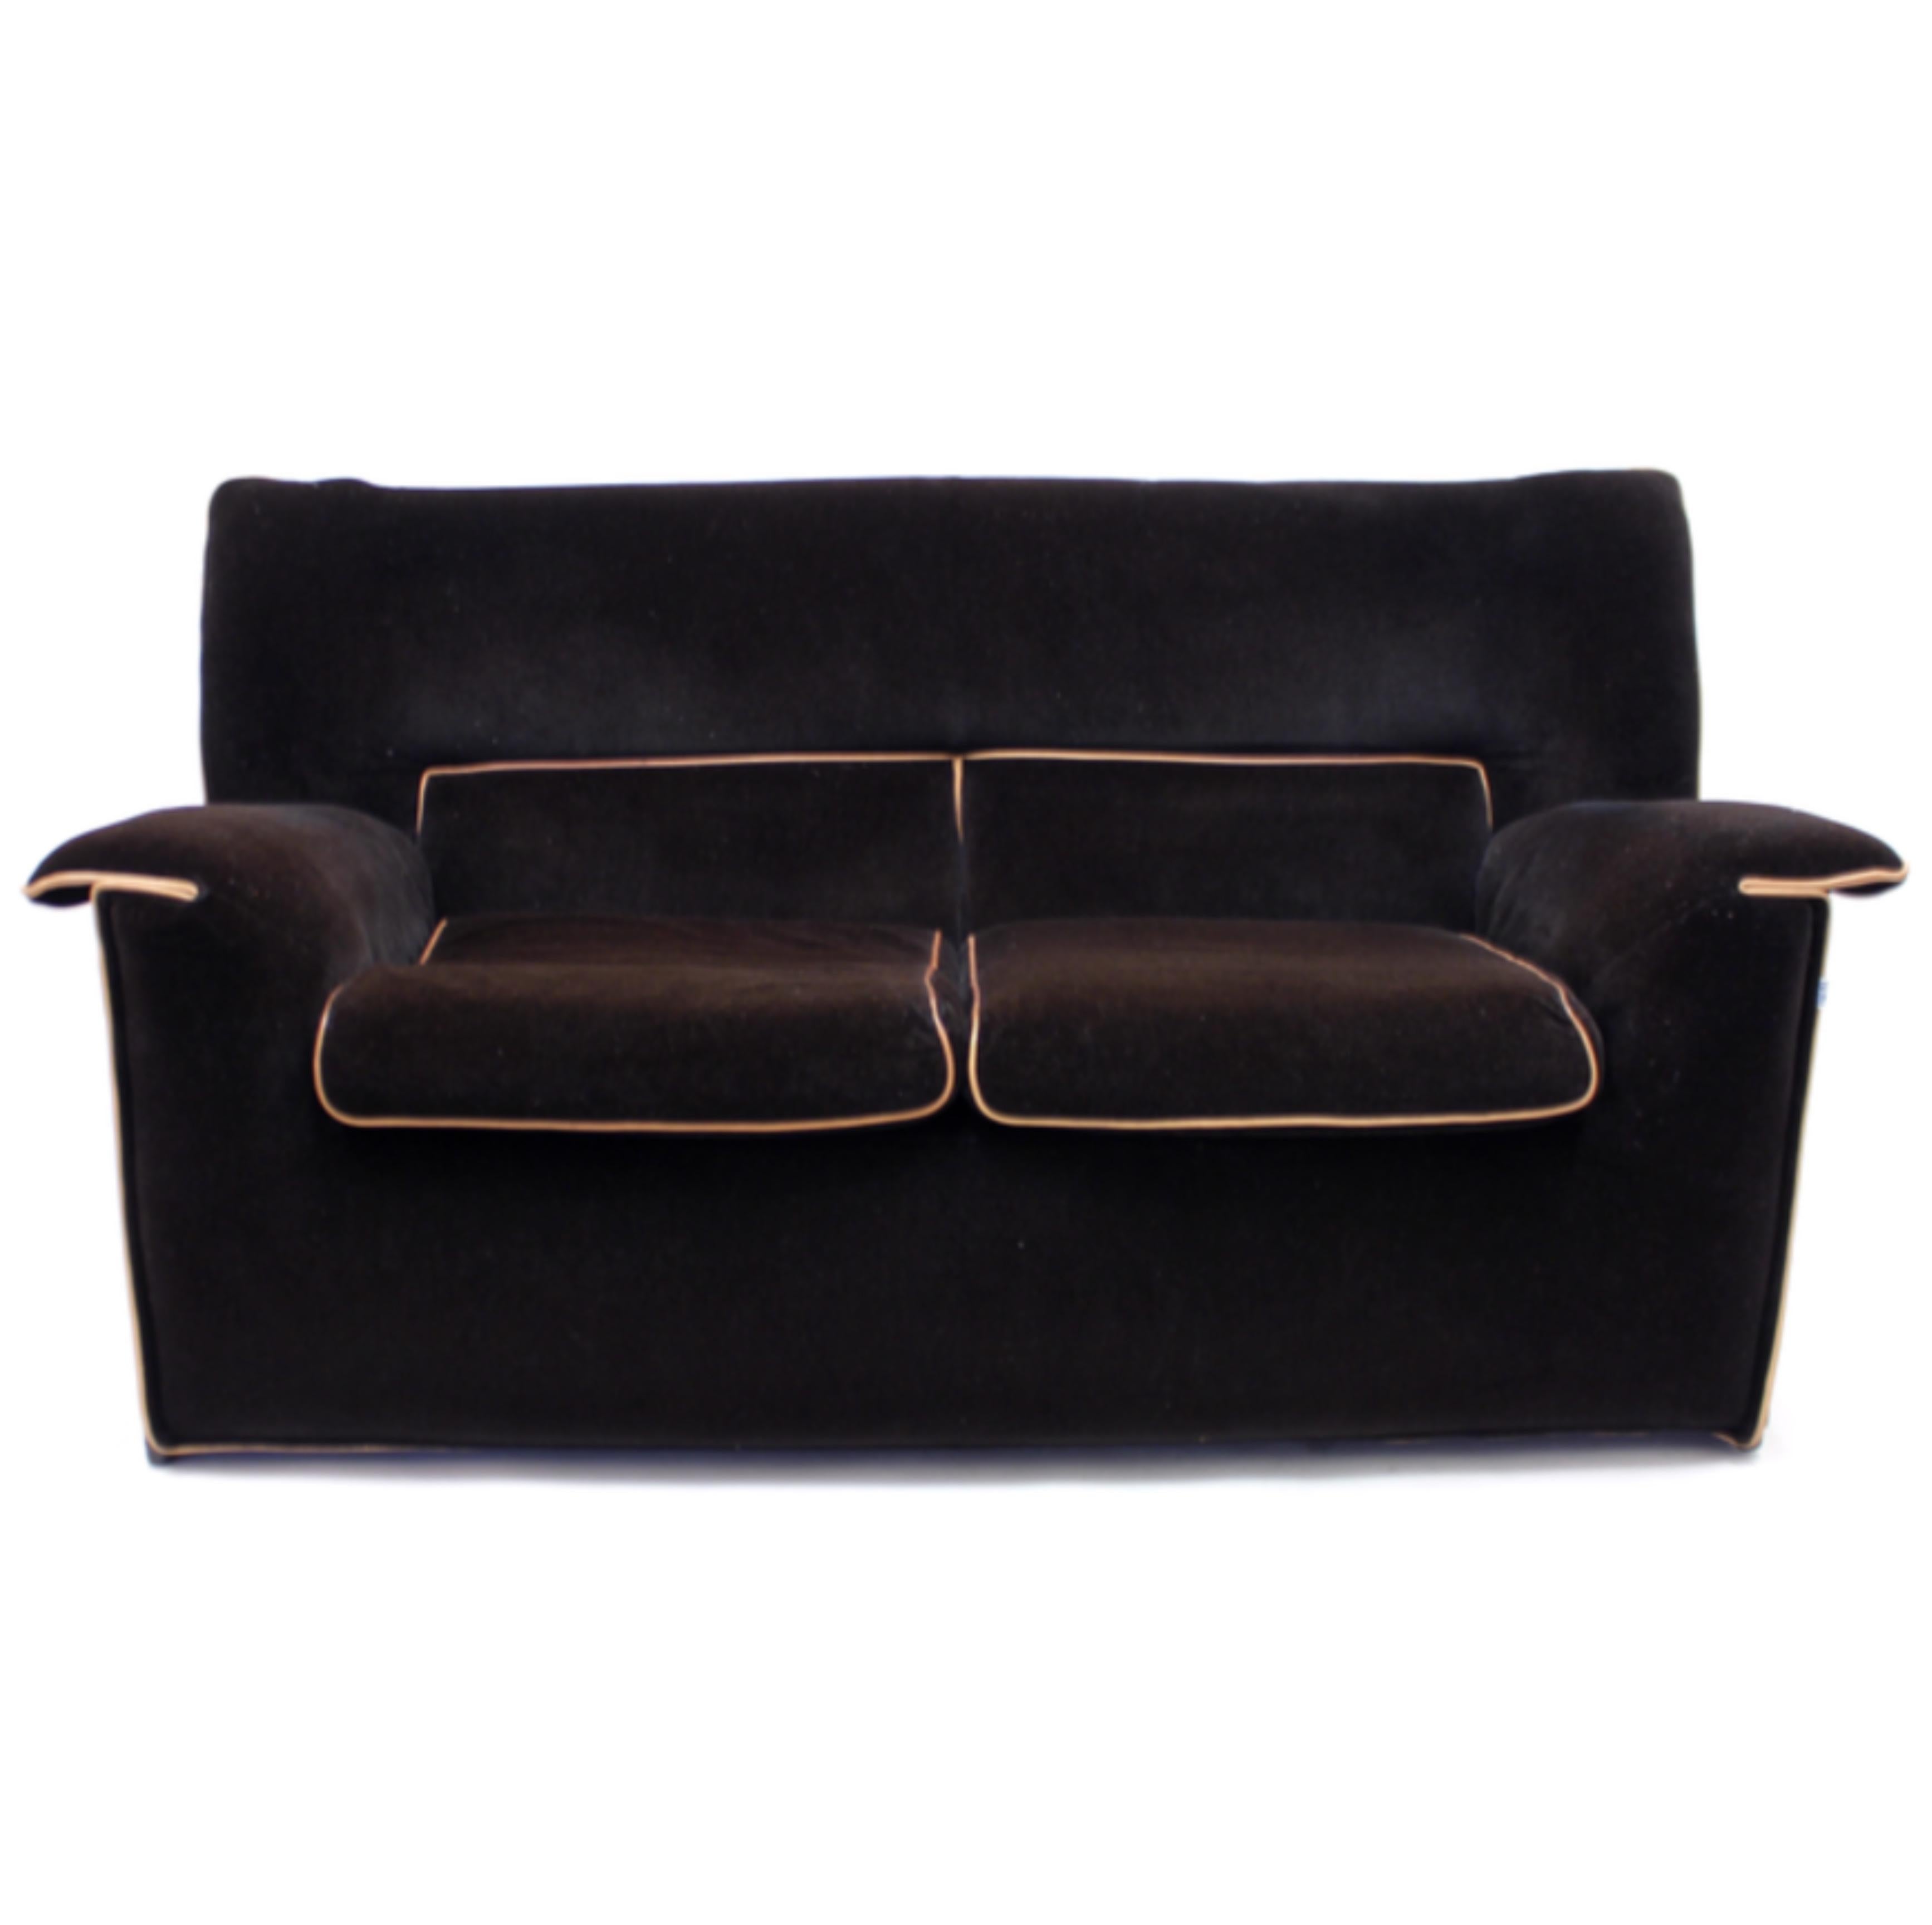 Lauriana 2-Sitzer-Sofa, entworfen von Afra & Tobia Scarpa 1978 für den italienischen Luxushersteller B&B Italia. Schokoladenbrauner abnehmbarer Samtbezug mit hellbrauner Paspelierung. Montiert auf einem Metallrahmen mit Kunststofffüßen. Zwei lose